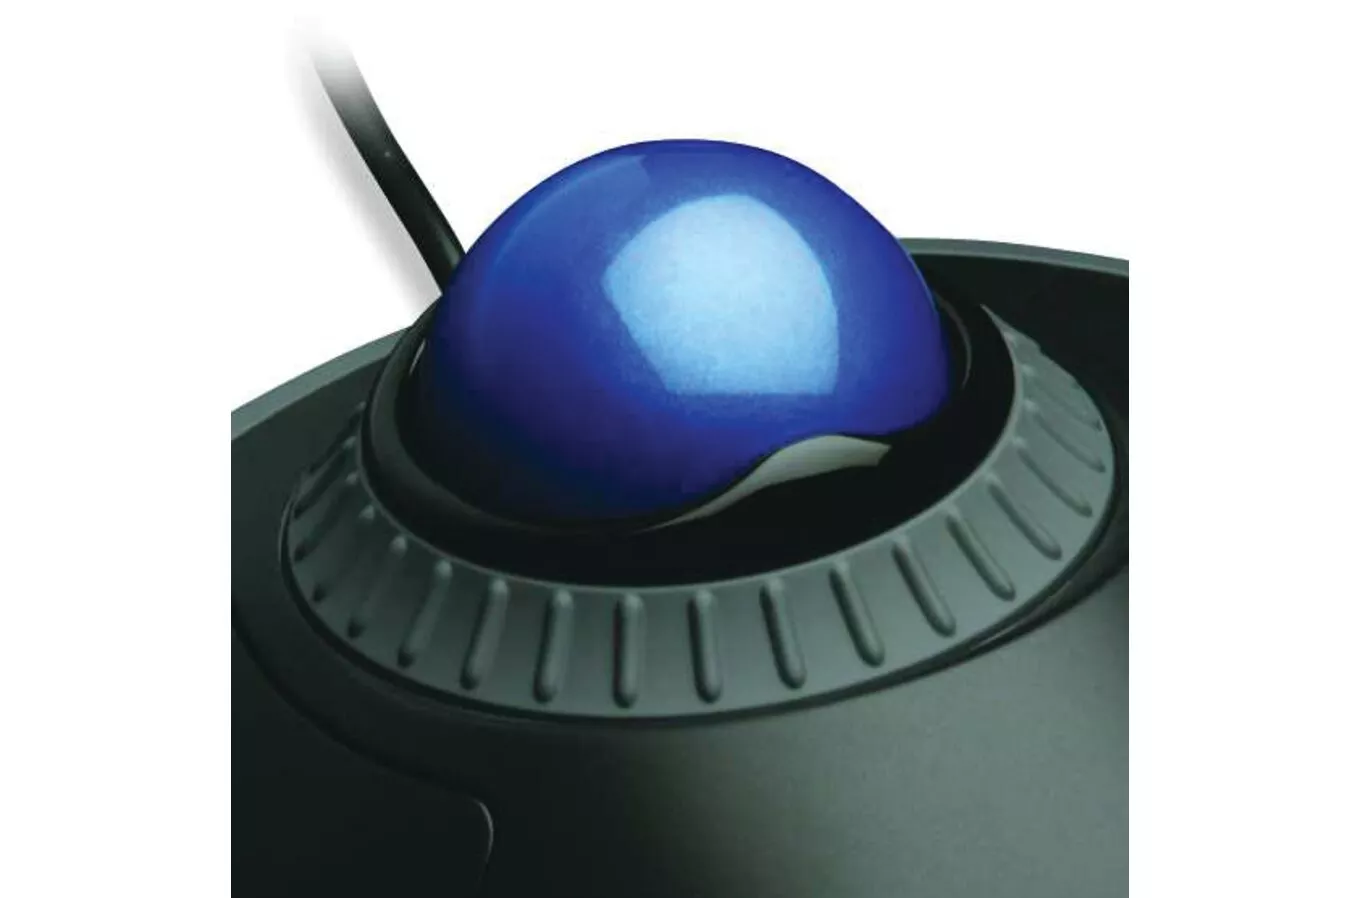 Vente Kensington Trackball Orbit® avec molette de défilement Scroll Kensington au meilleur prix - visuel 8